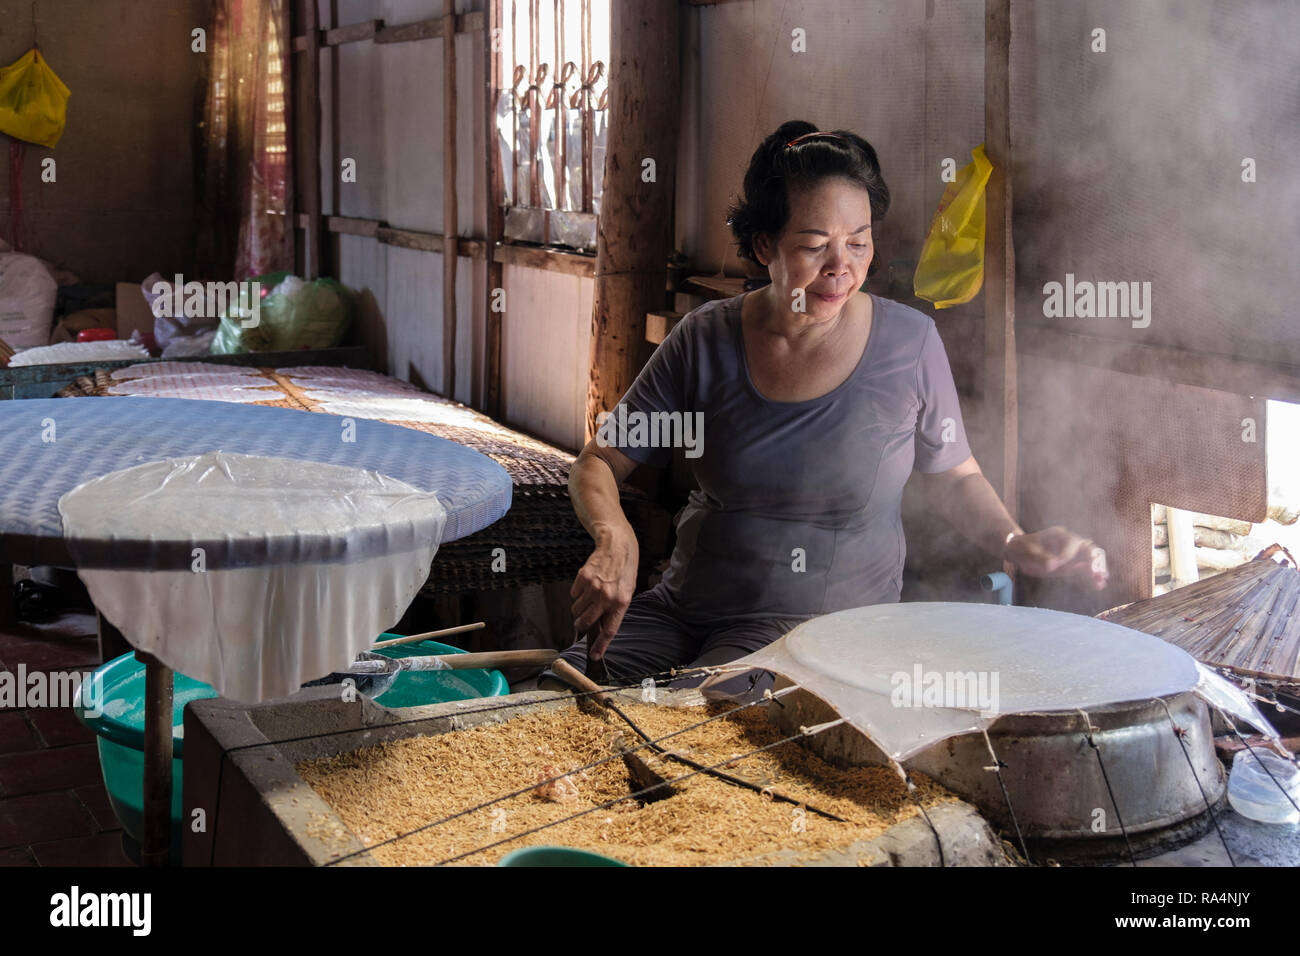 Vietnamesische Frau mit Reis Körner Reis papier wickelt in einer Schauwerkstatt. Cai, tiền Giang Provinz, Mekong Delta, Vietnam, Asien Stockfoto